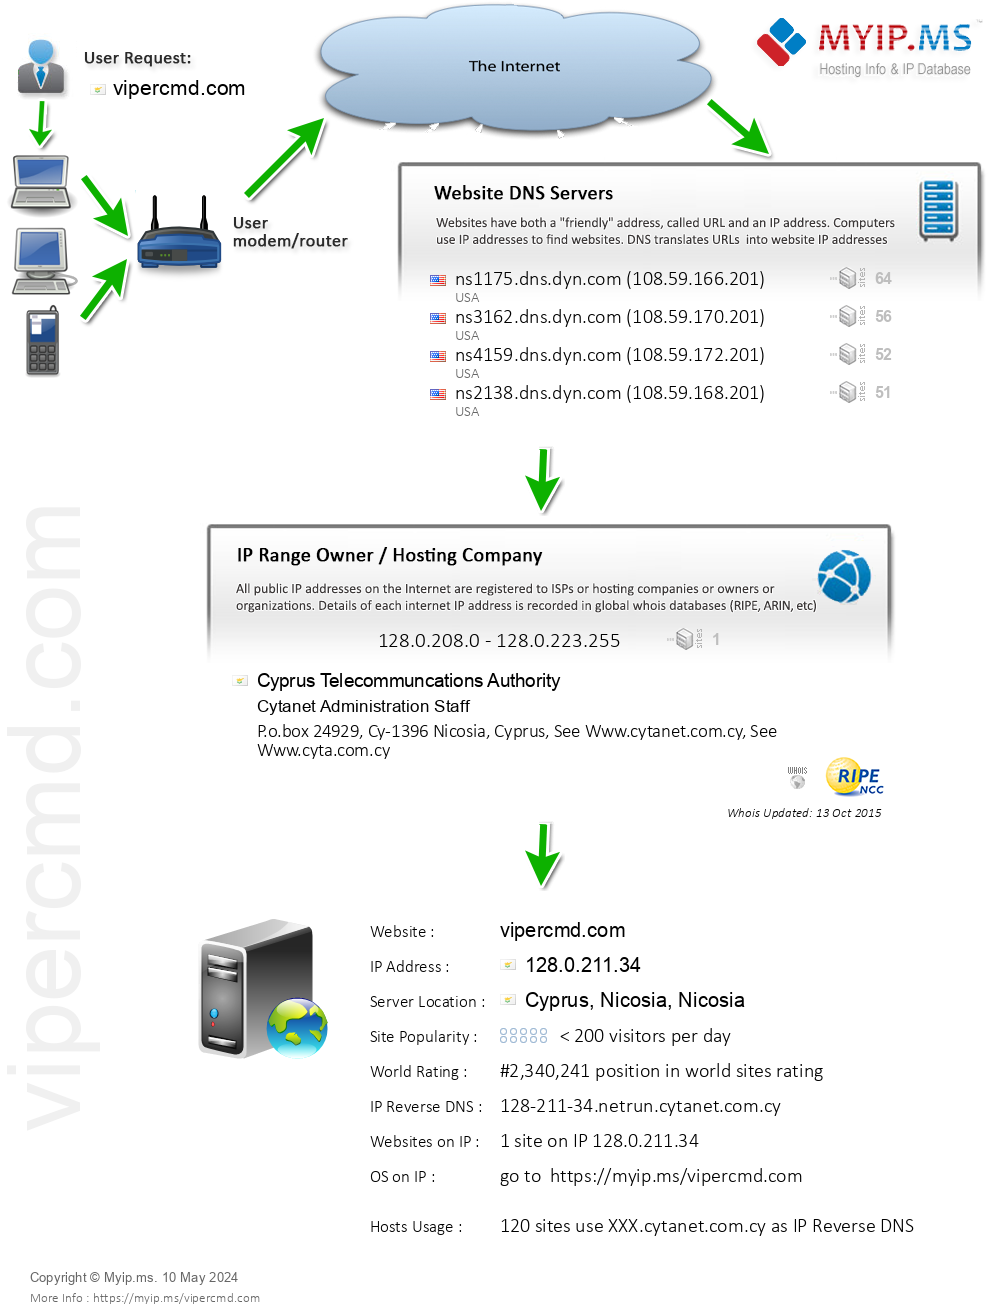 Vipercmd.com - Website Hosting Visual IP Diagram